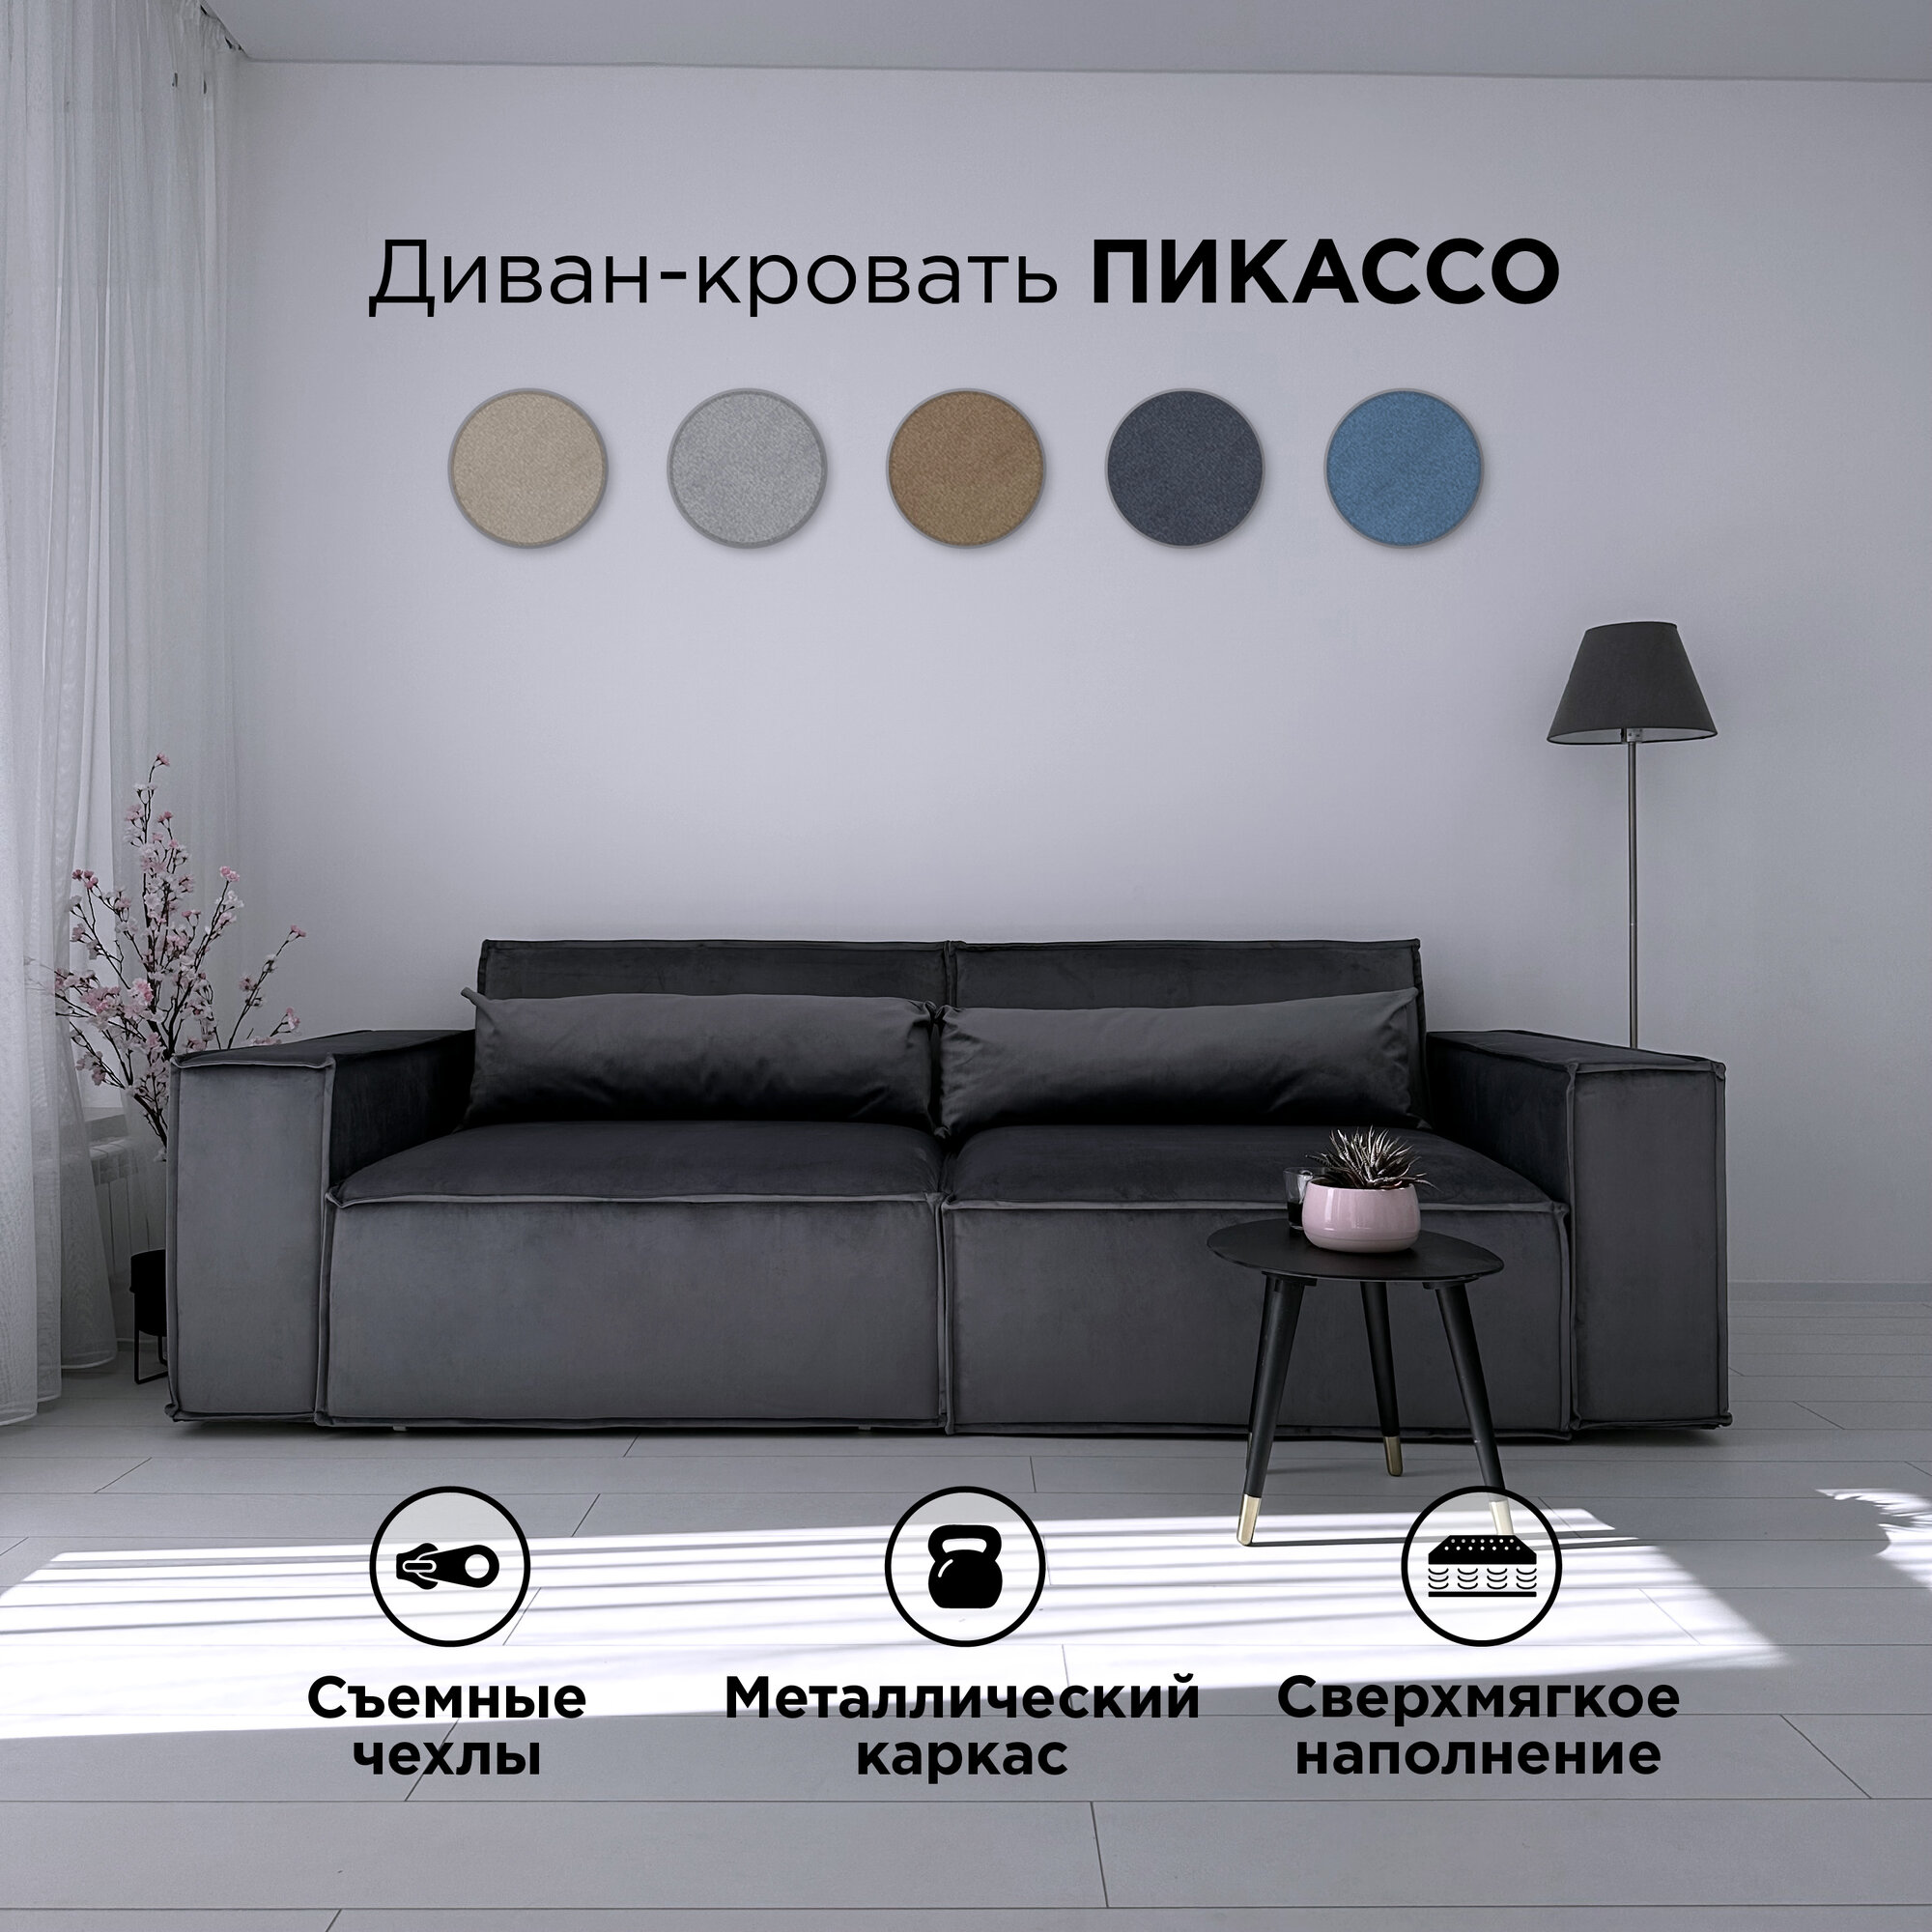 Диван-кровать Redsofa Пикассо 260 см серый антивандальный. Раскладной прямой диван со съемными чехлами, для дома и офиса.